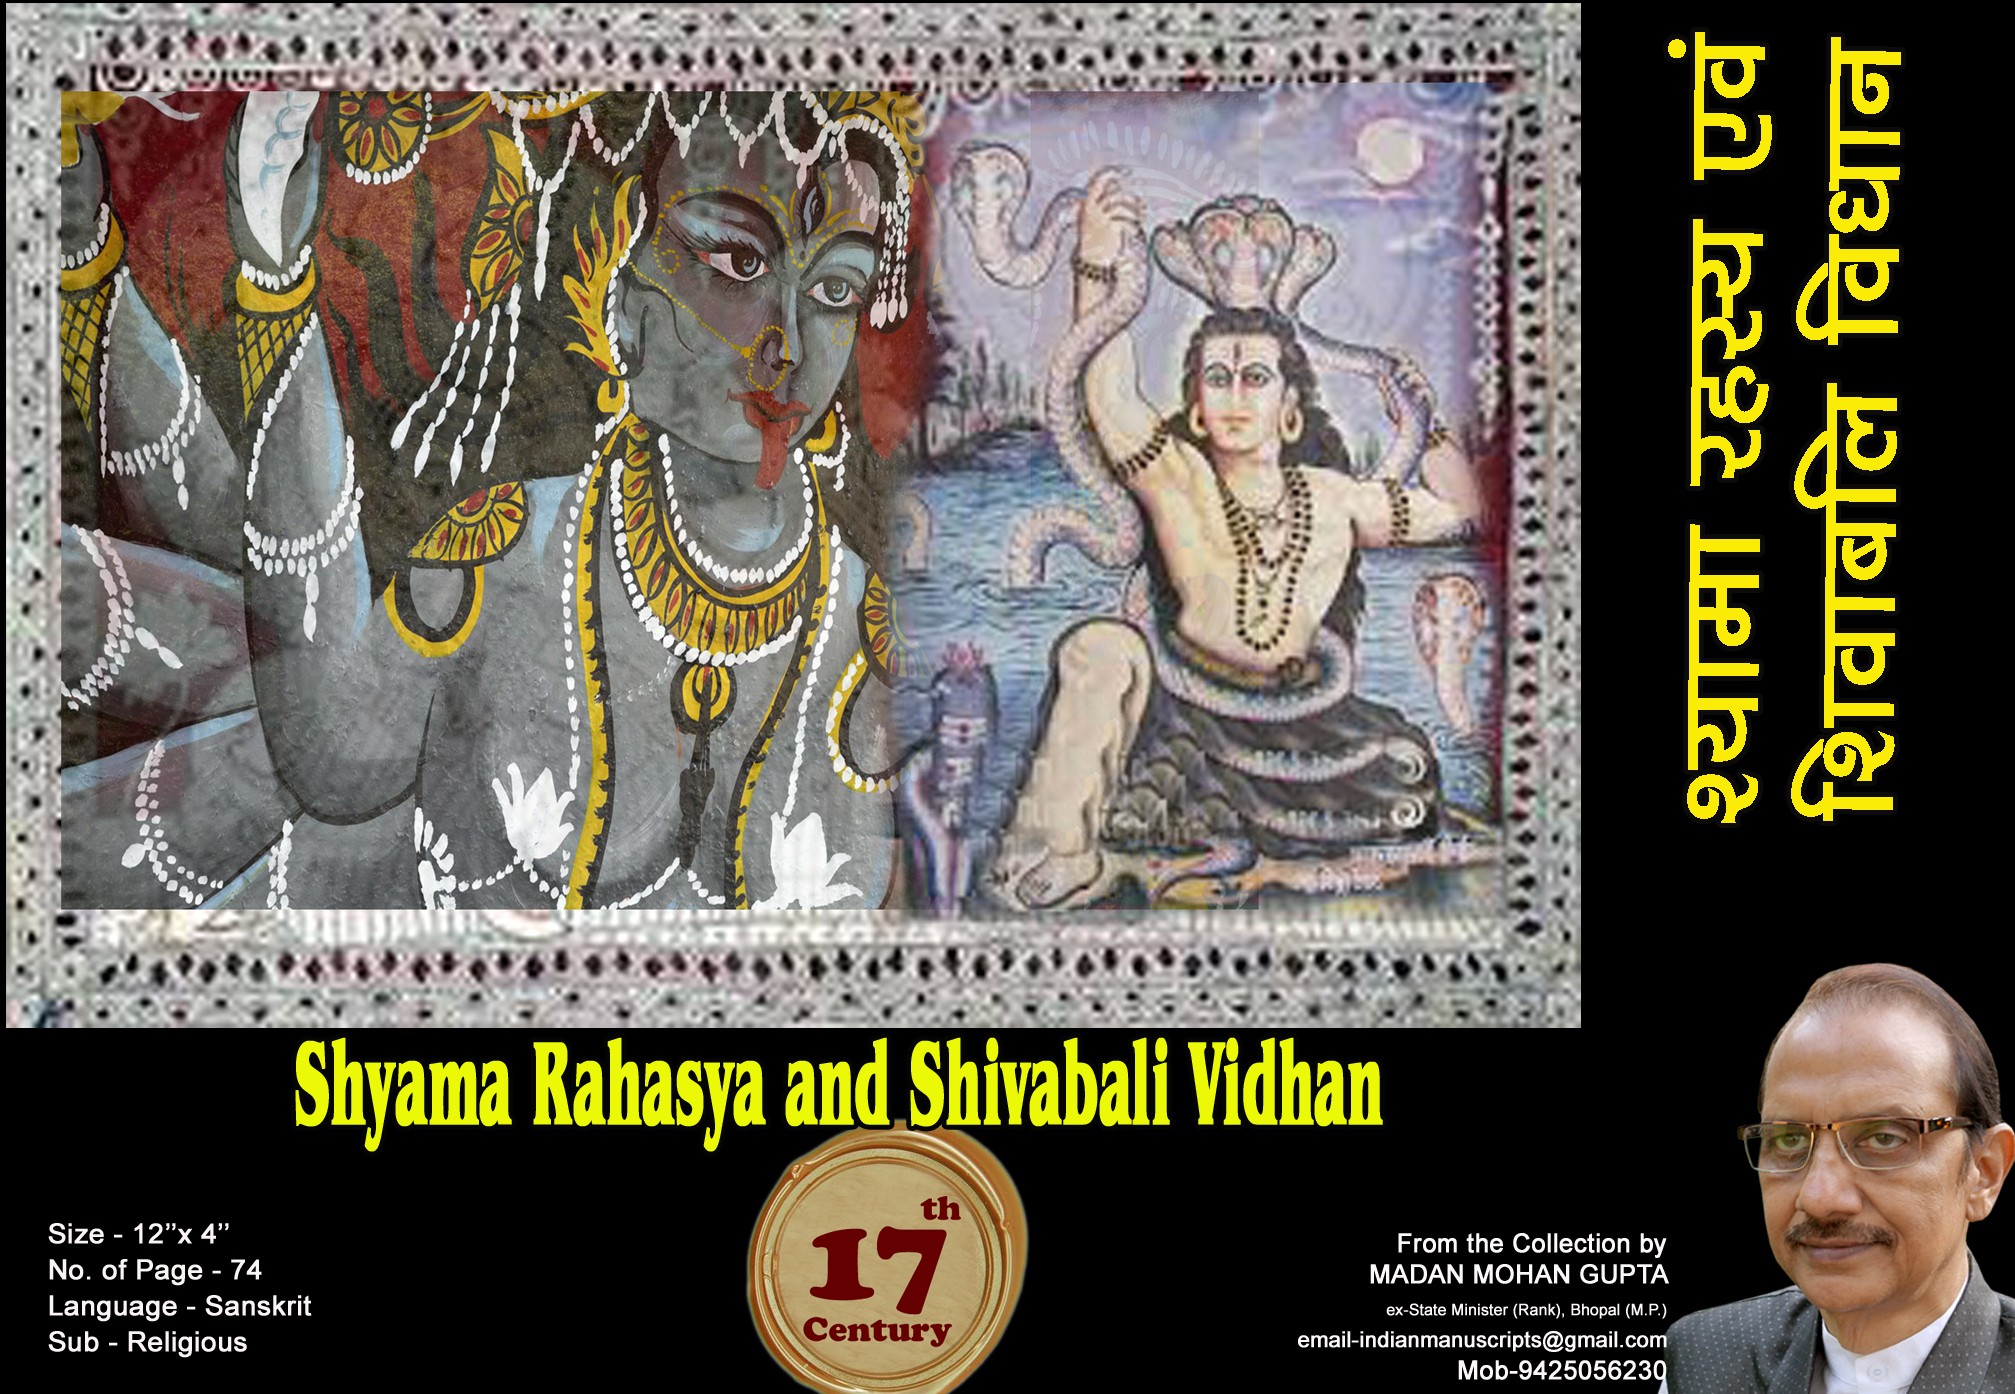 shyam_rahasya_and_shivavali_vidhan